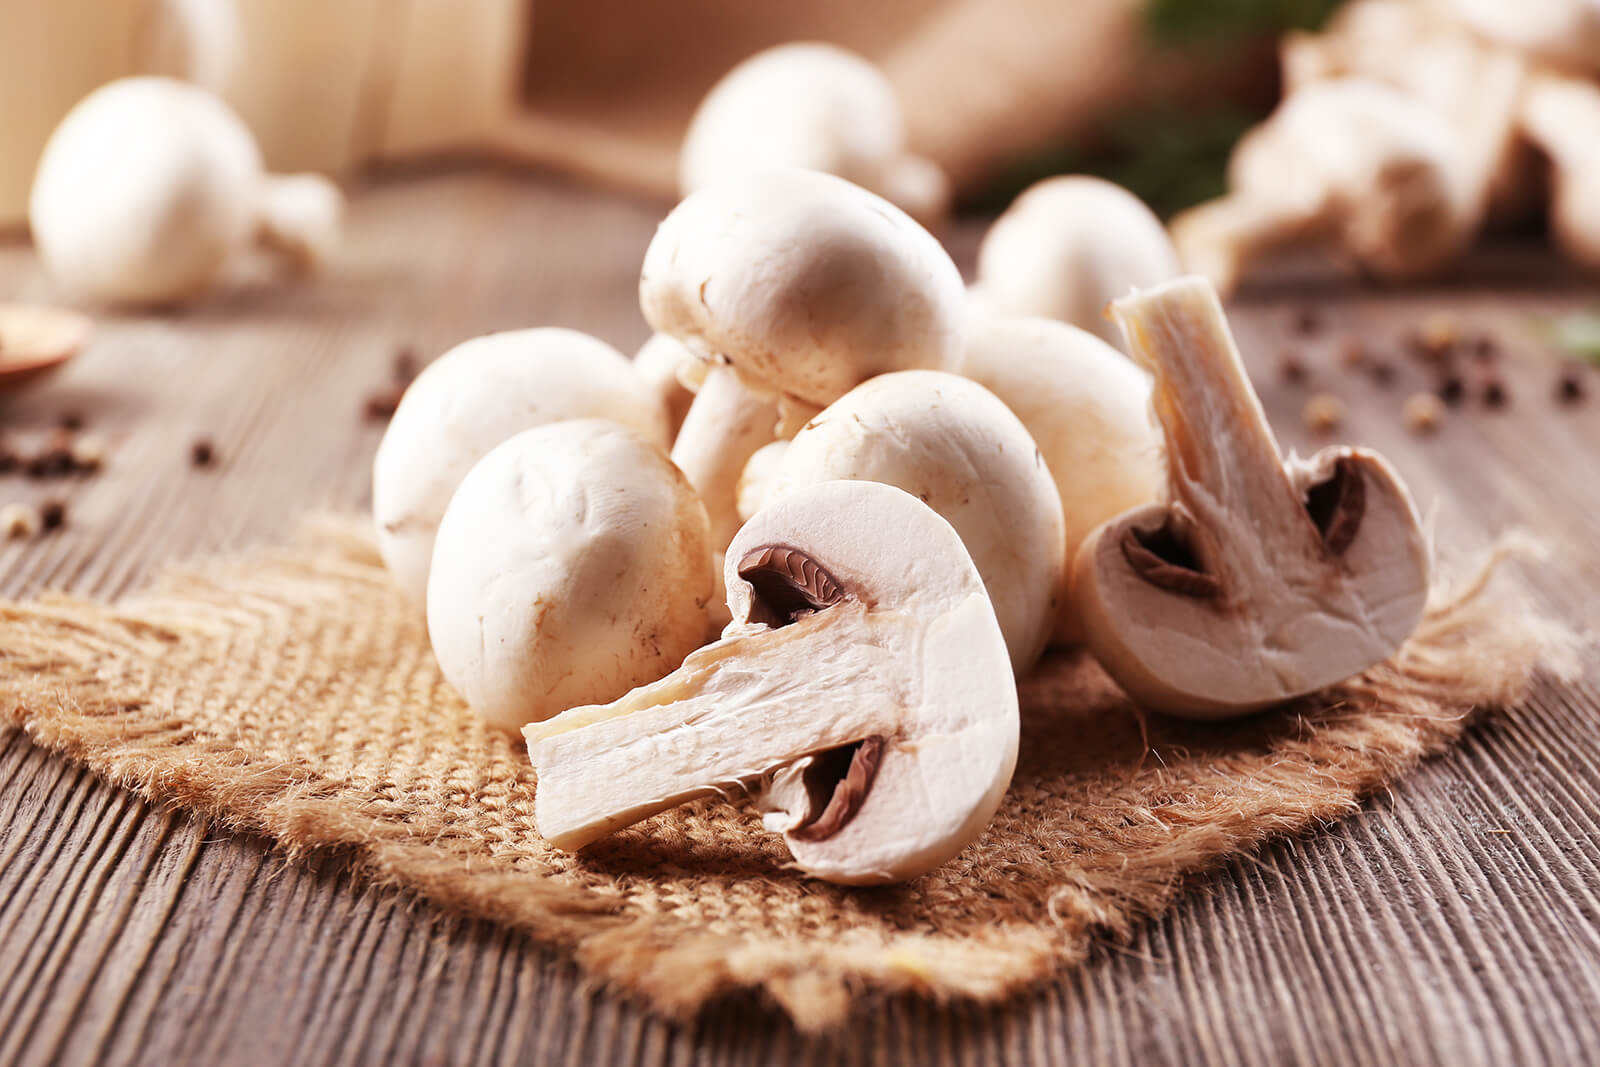 Jamur champignon ditata di atas tatakan karung goni di atas meja kayu